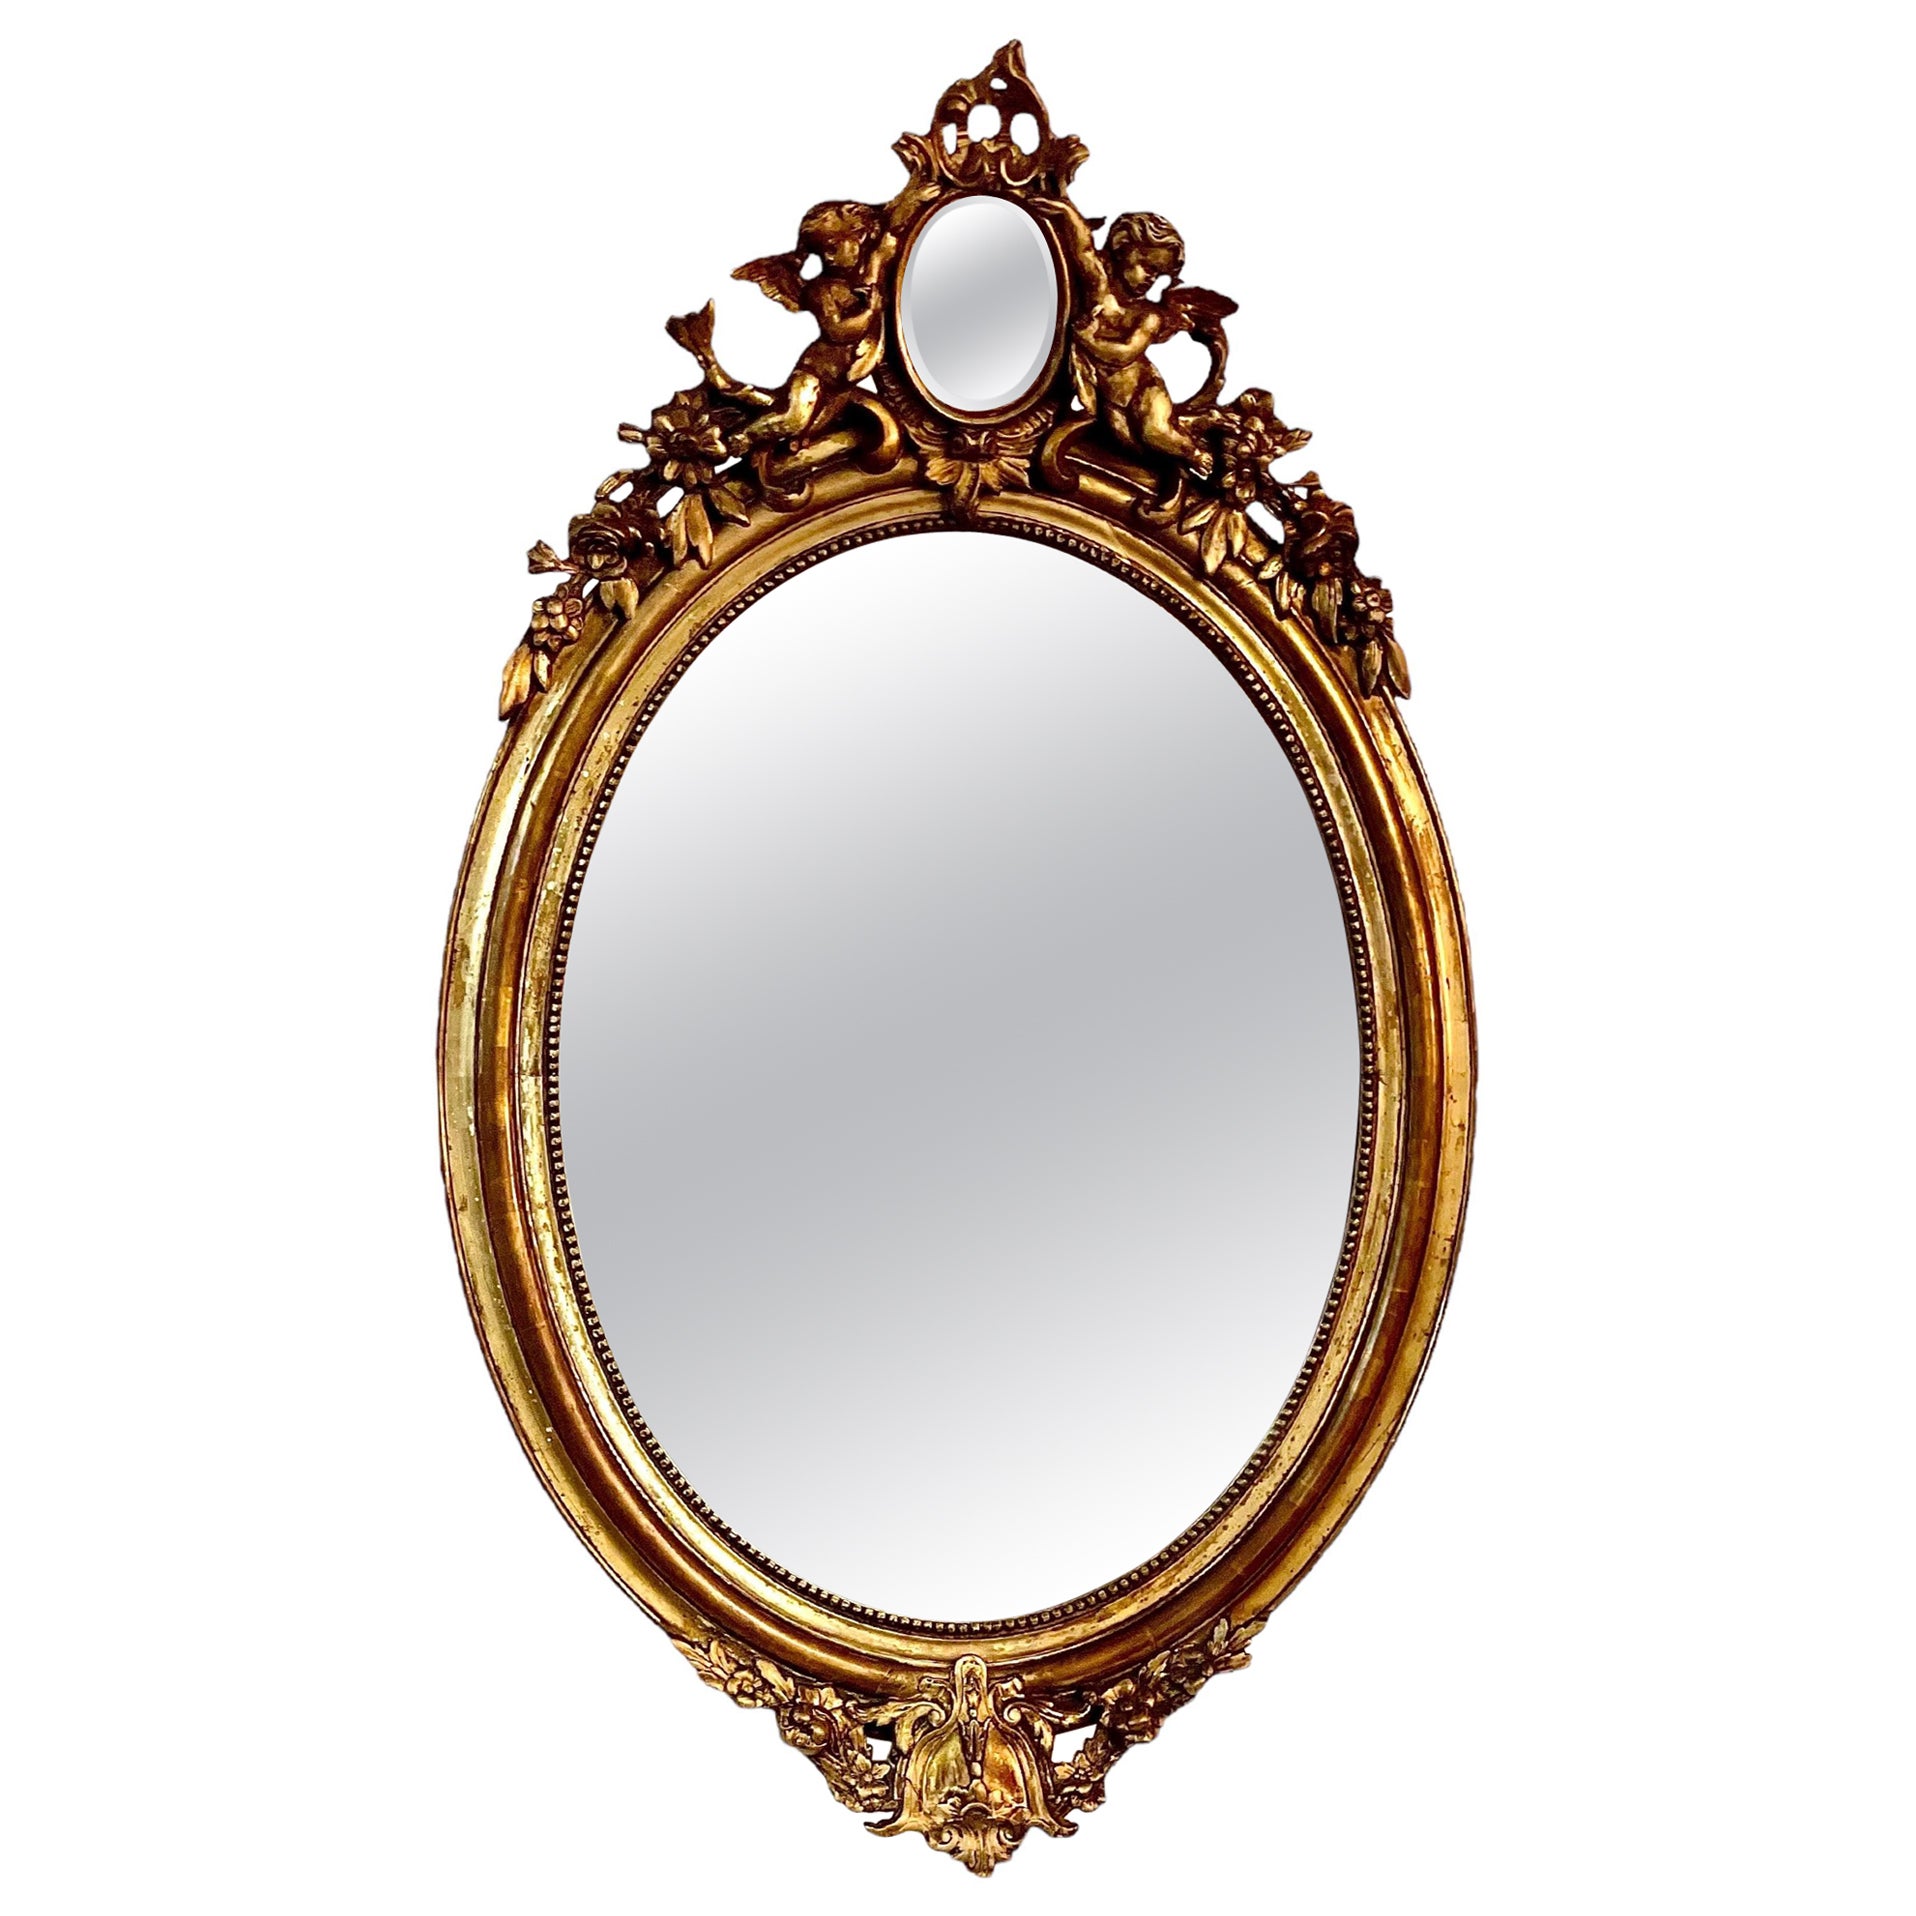 Ovaler französischer Spiegel aus Giltwood mit Putten, antik